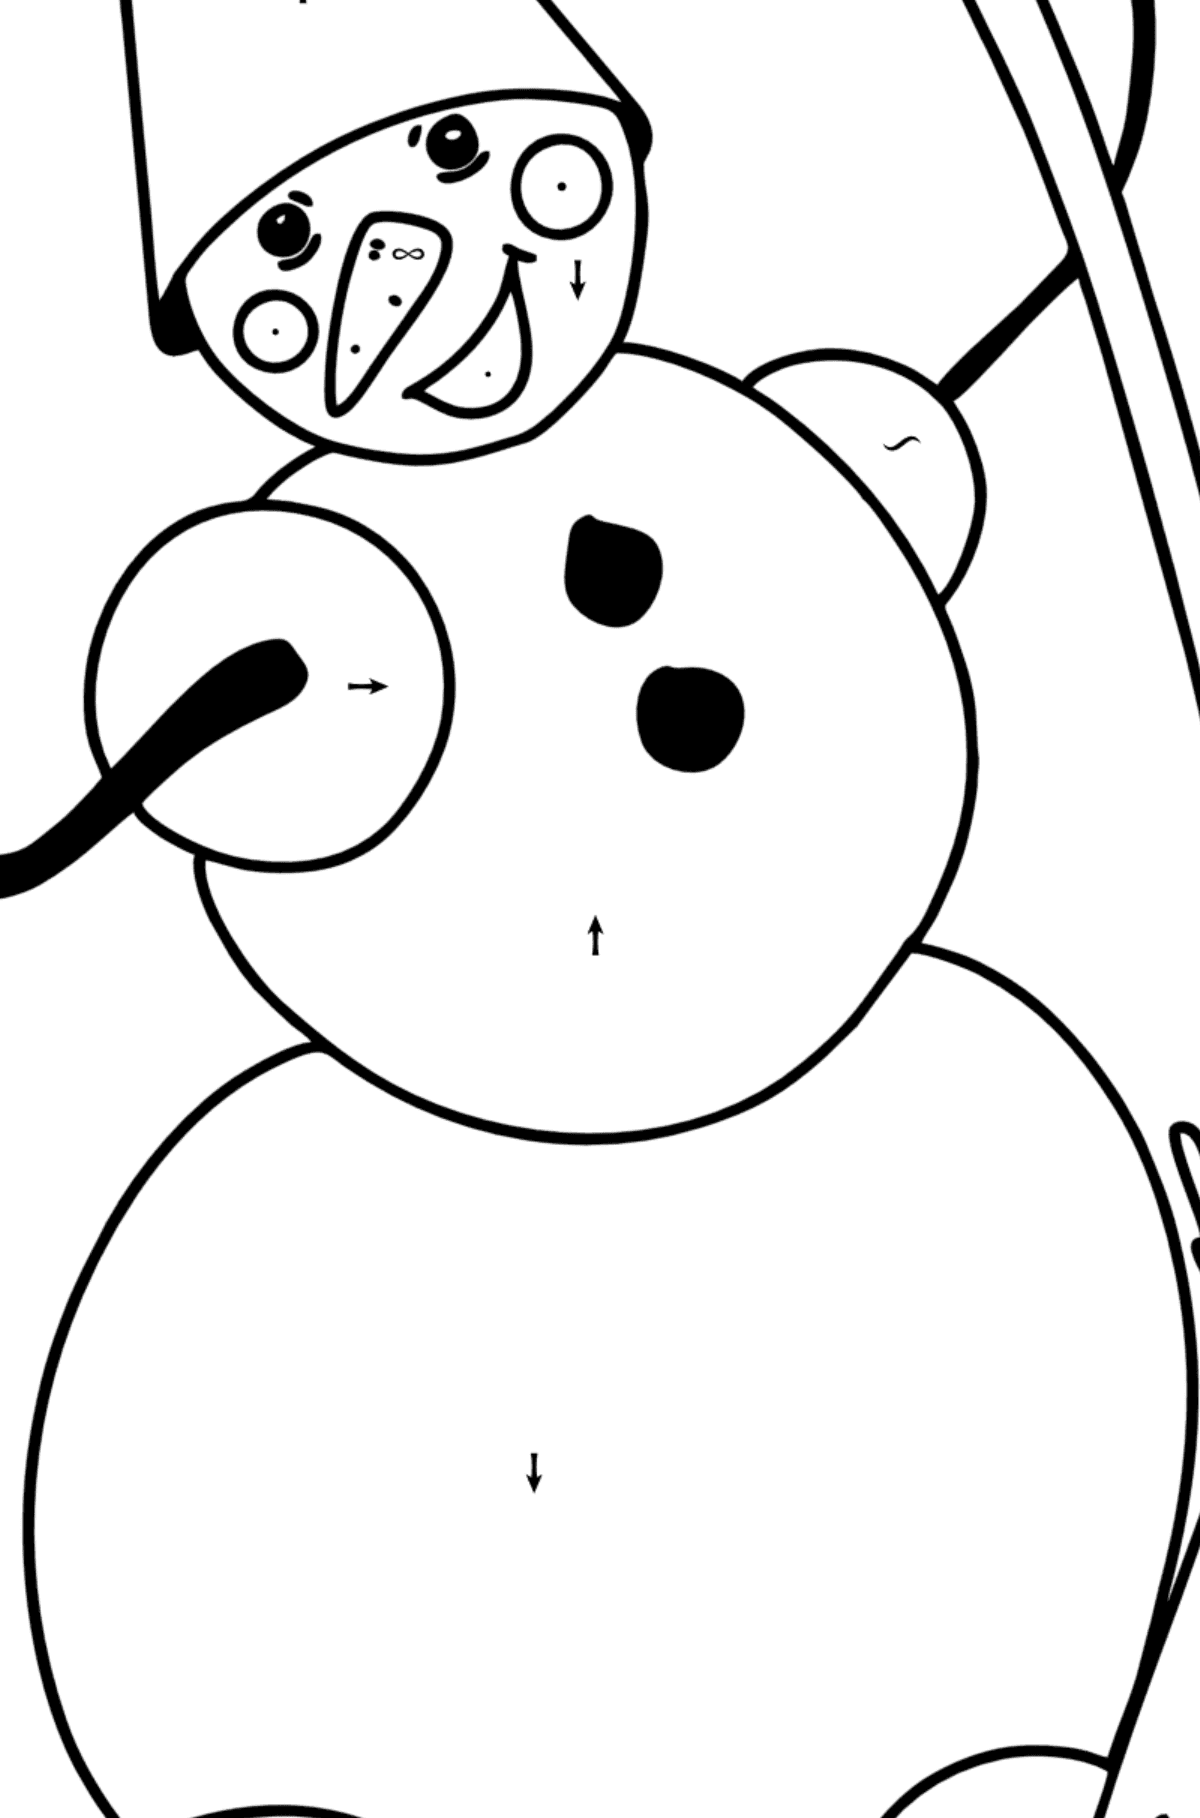 Kleurplaat sneeuwpop met bezem - Kleuren met symbolen voor kinderen